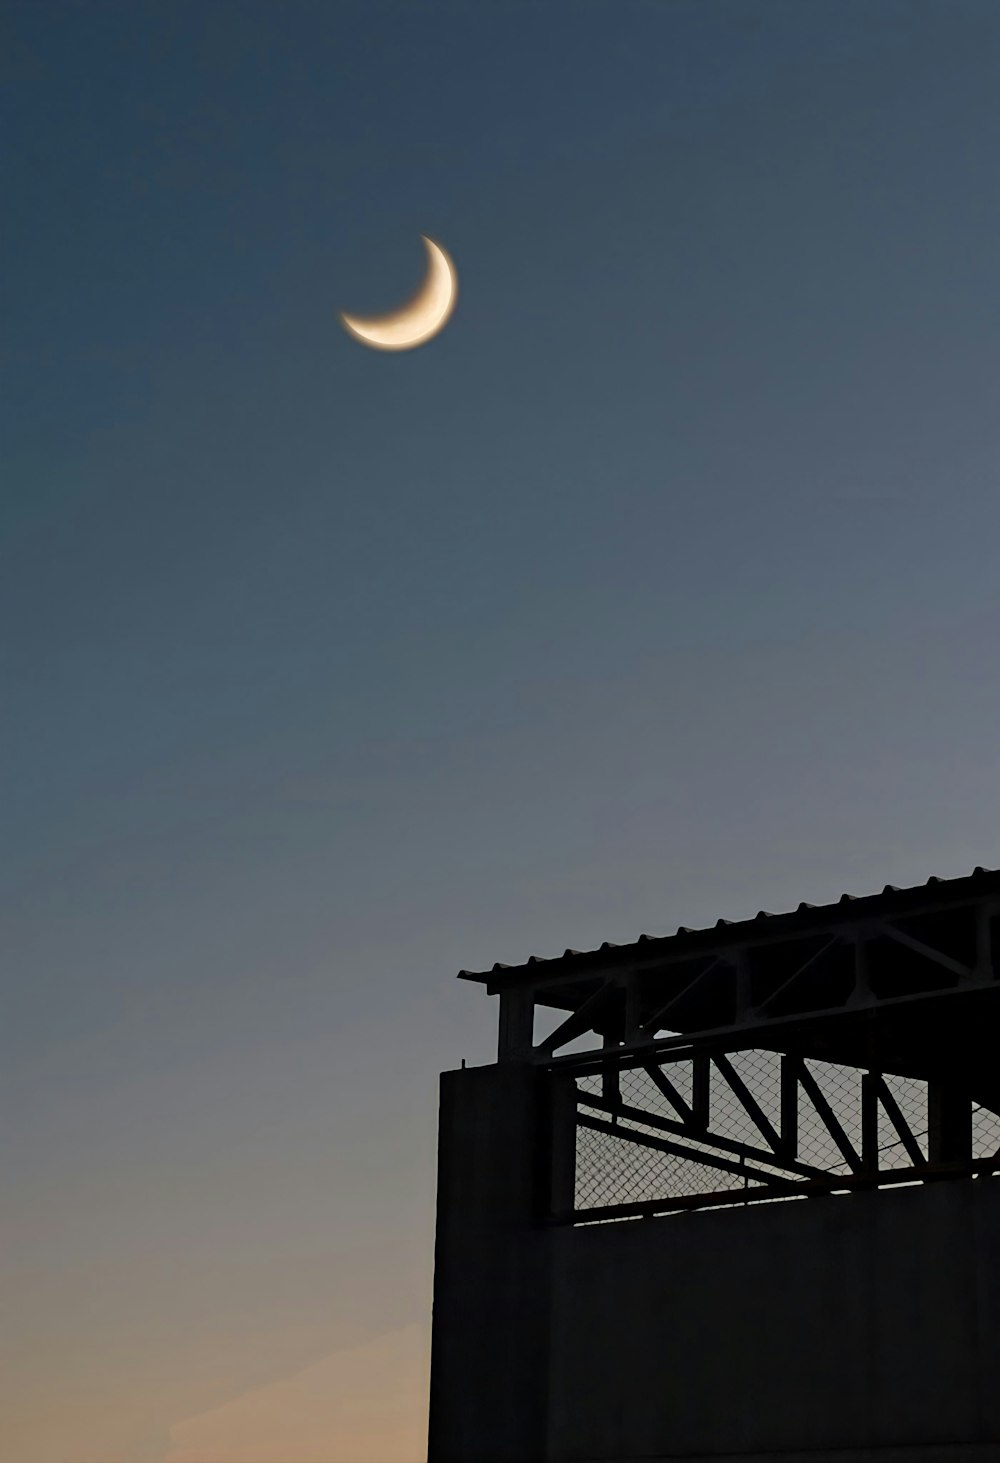 Une demi-lune est vue dans le ciel au-dessus d’un bâtiment